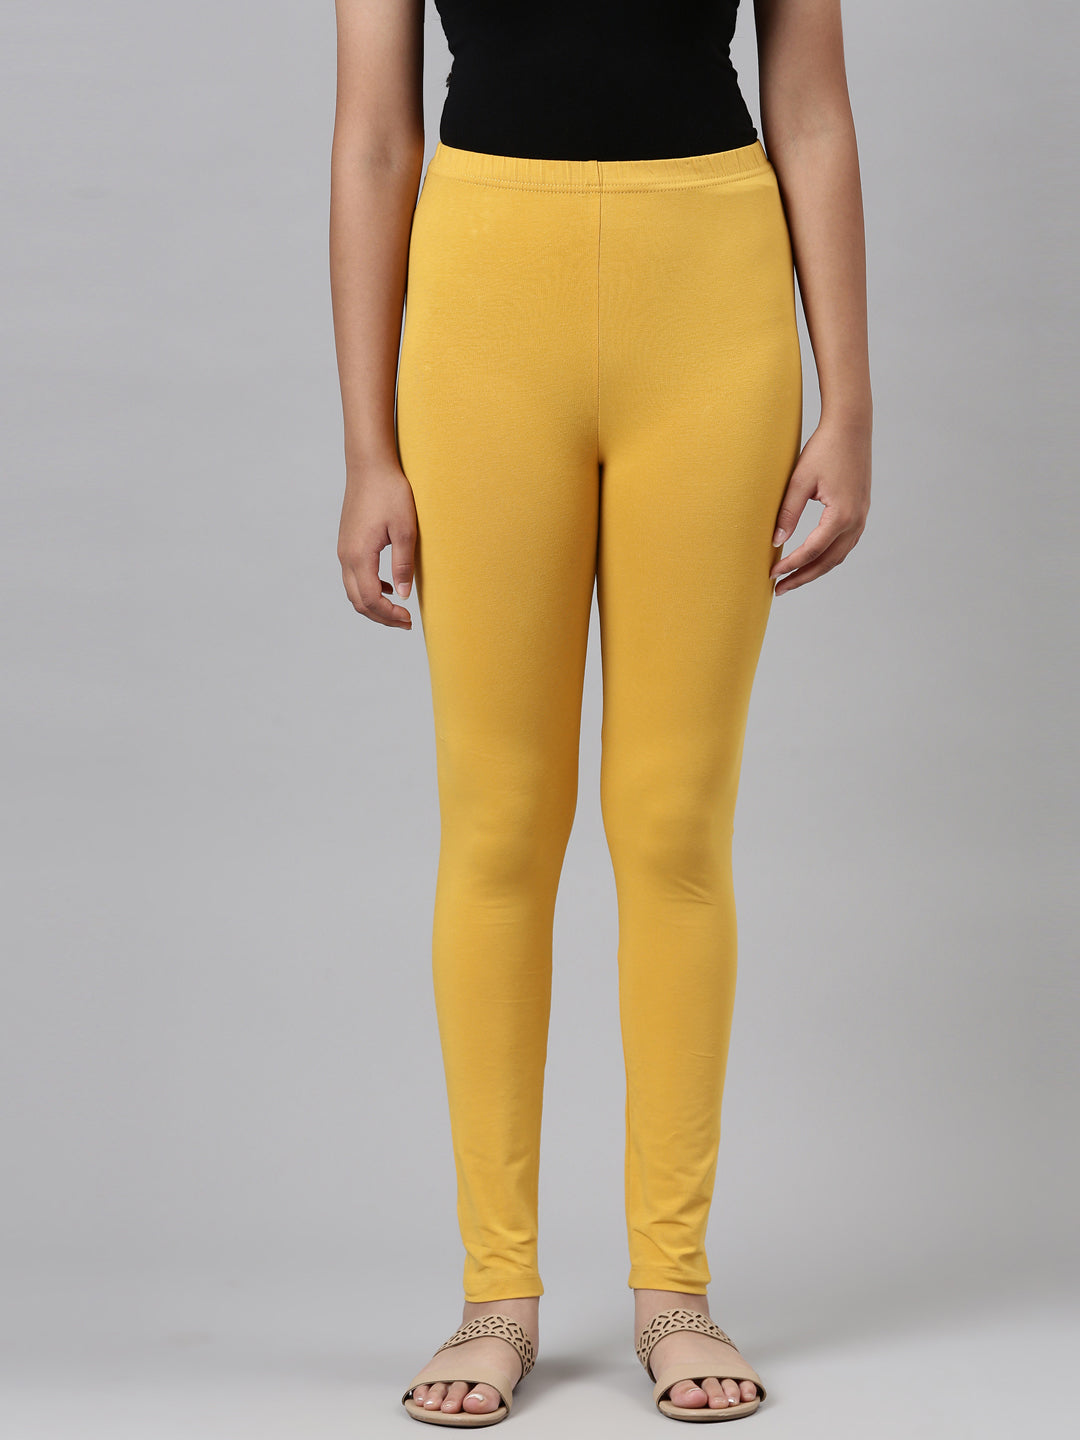 Yellow Leggings | Yellow Pants for Baby Girls | Newborn Yellow Pants –  Dudisdesign